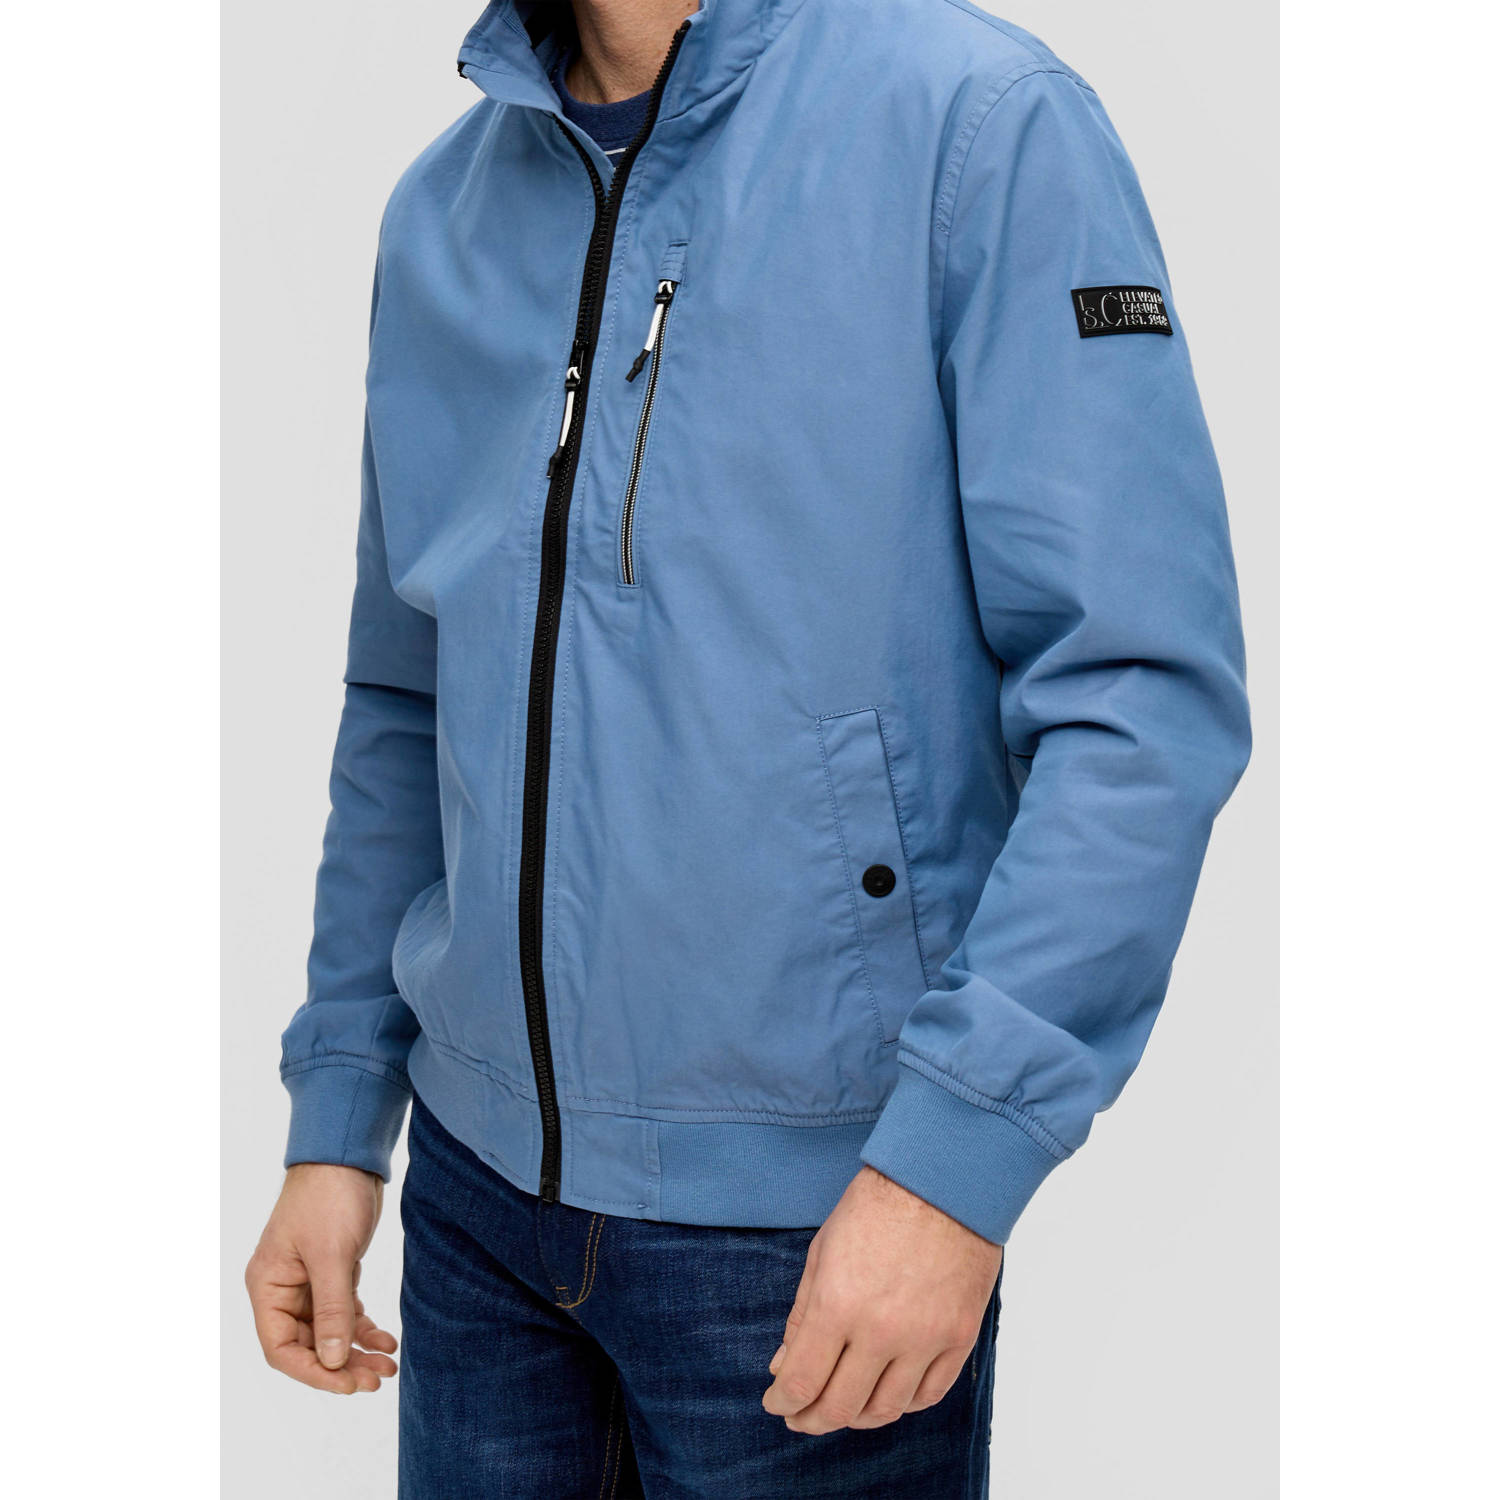 s.Oliver jas met logo lichtblauw